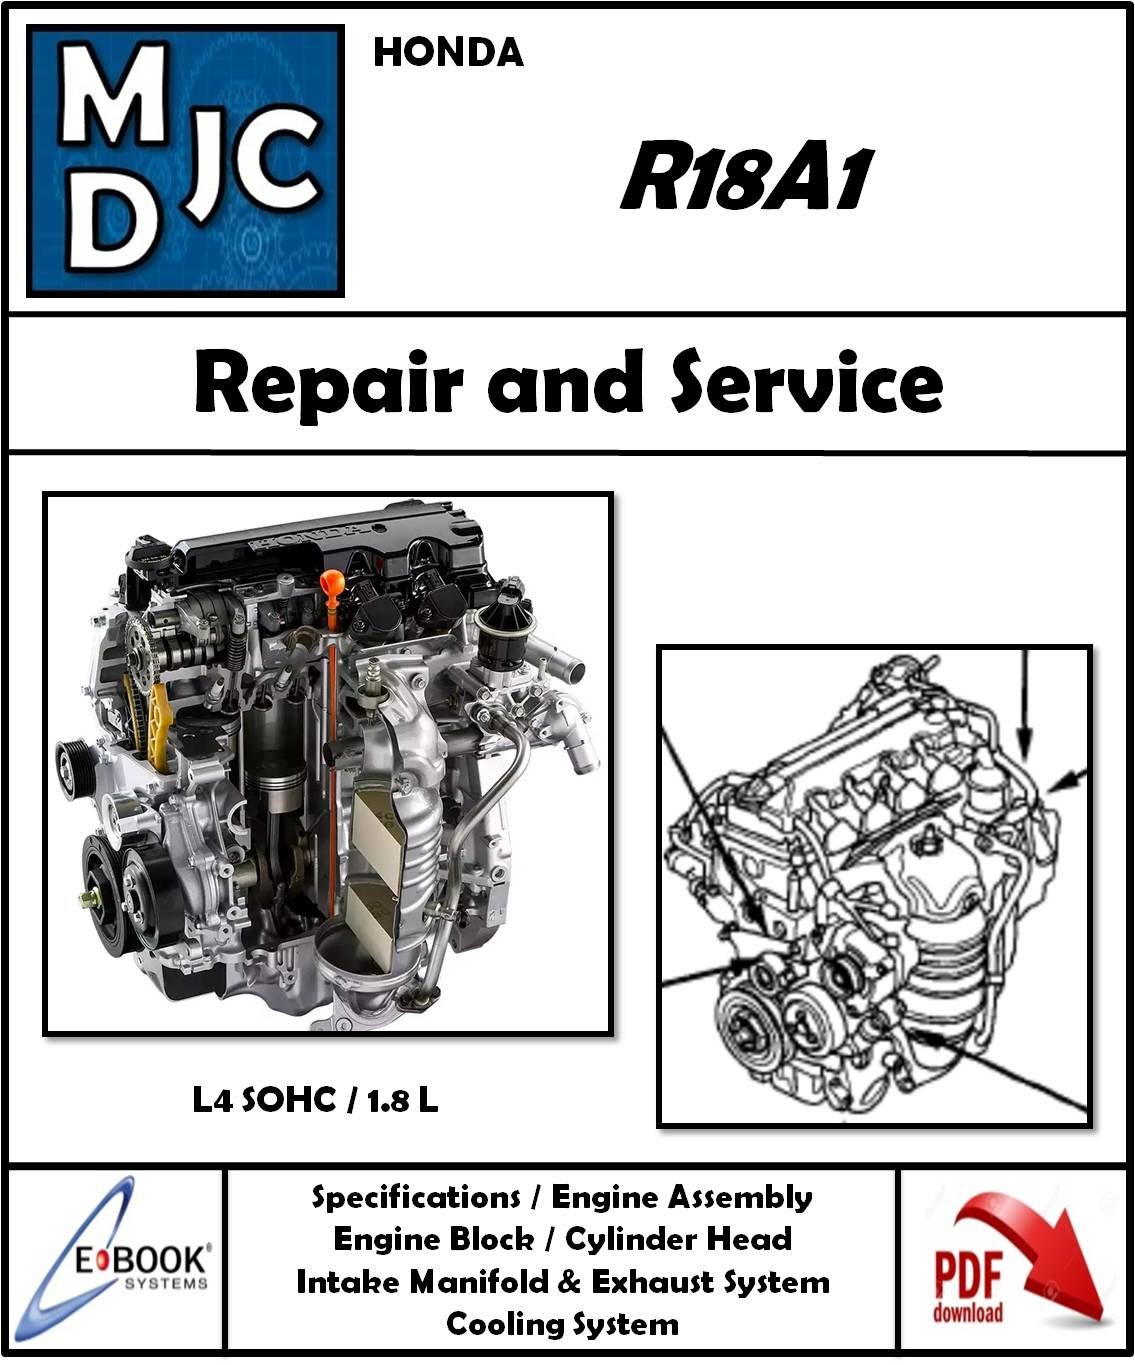 Manual de Taller (Reparación) Motor Honda R18A1